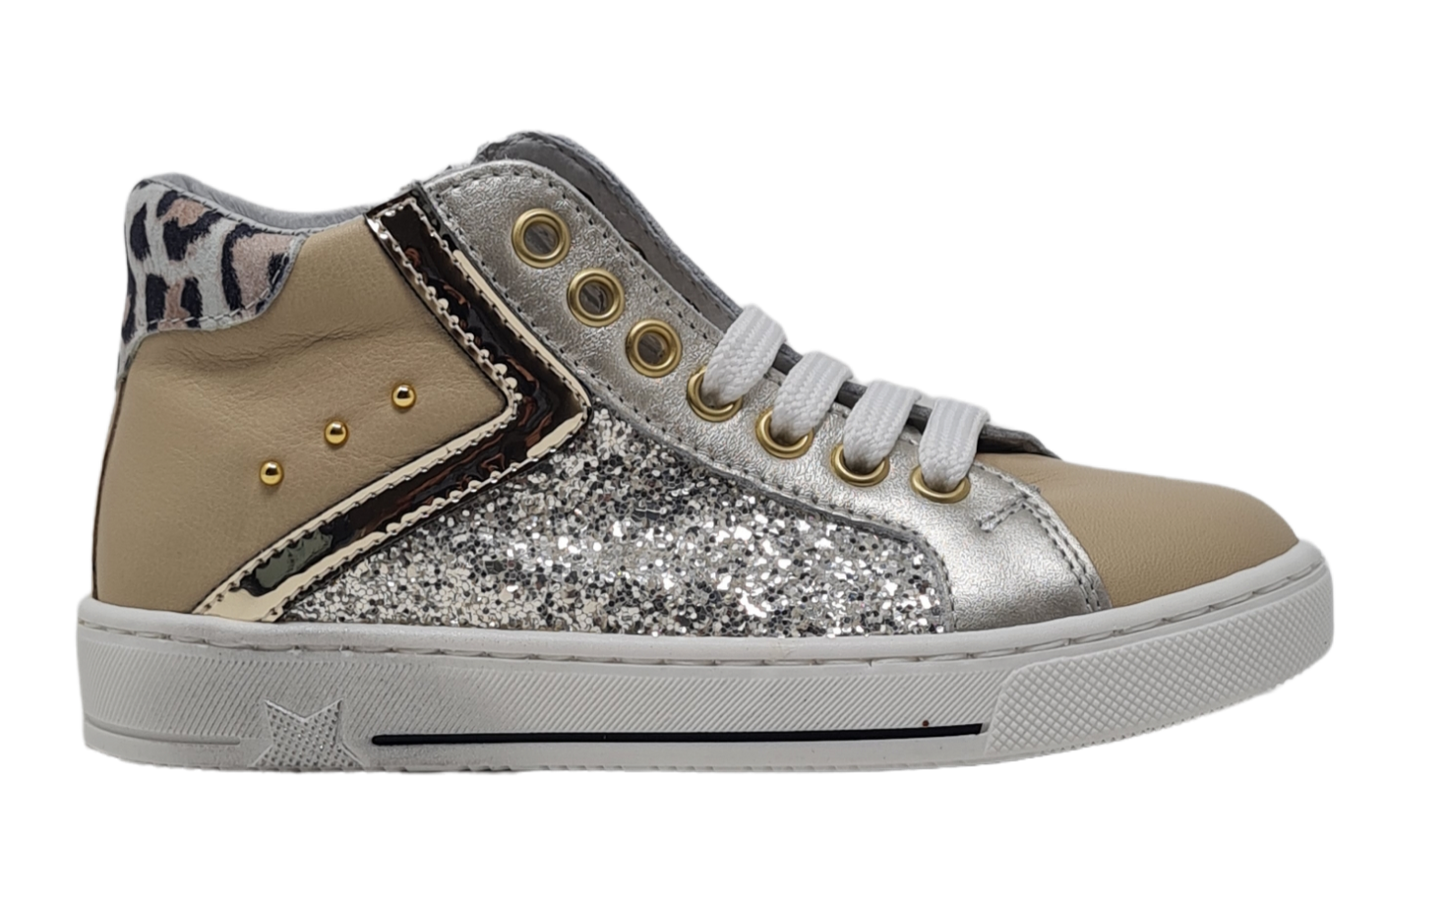 Sneakers Glitter 621493